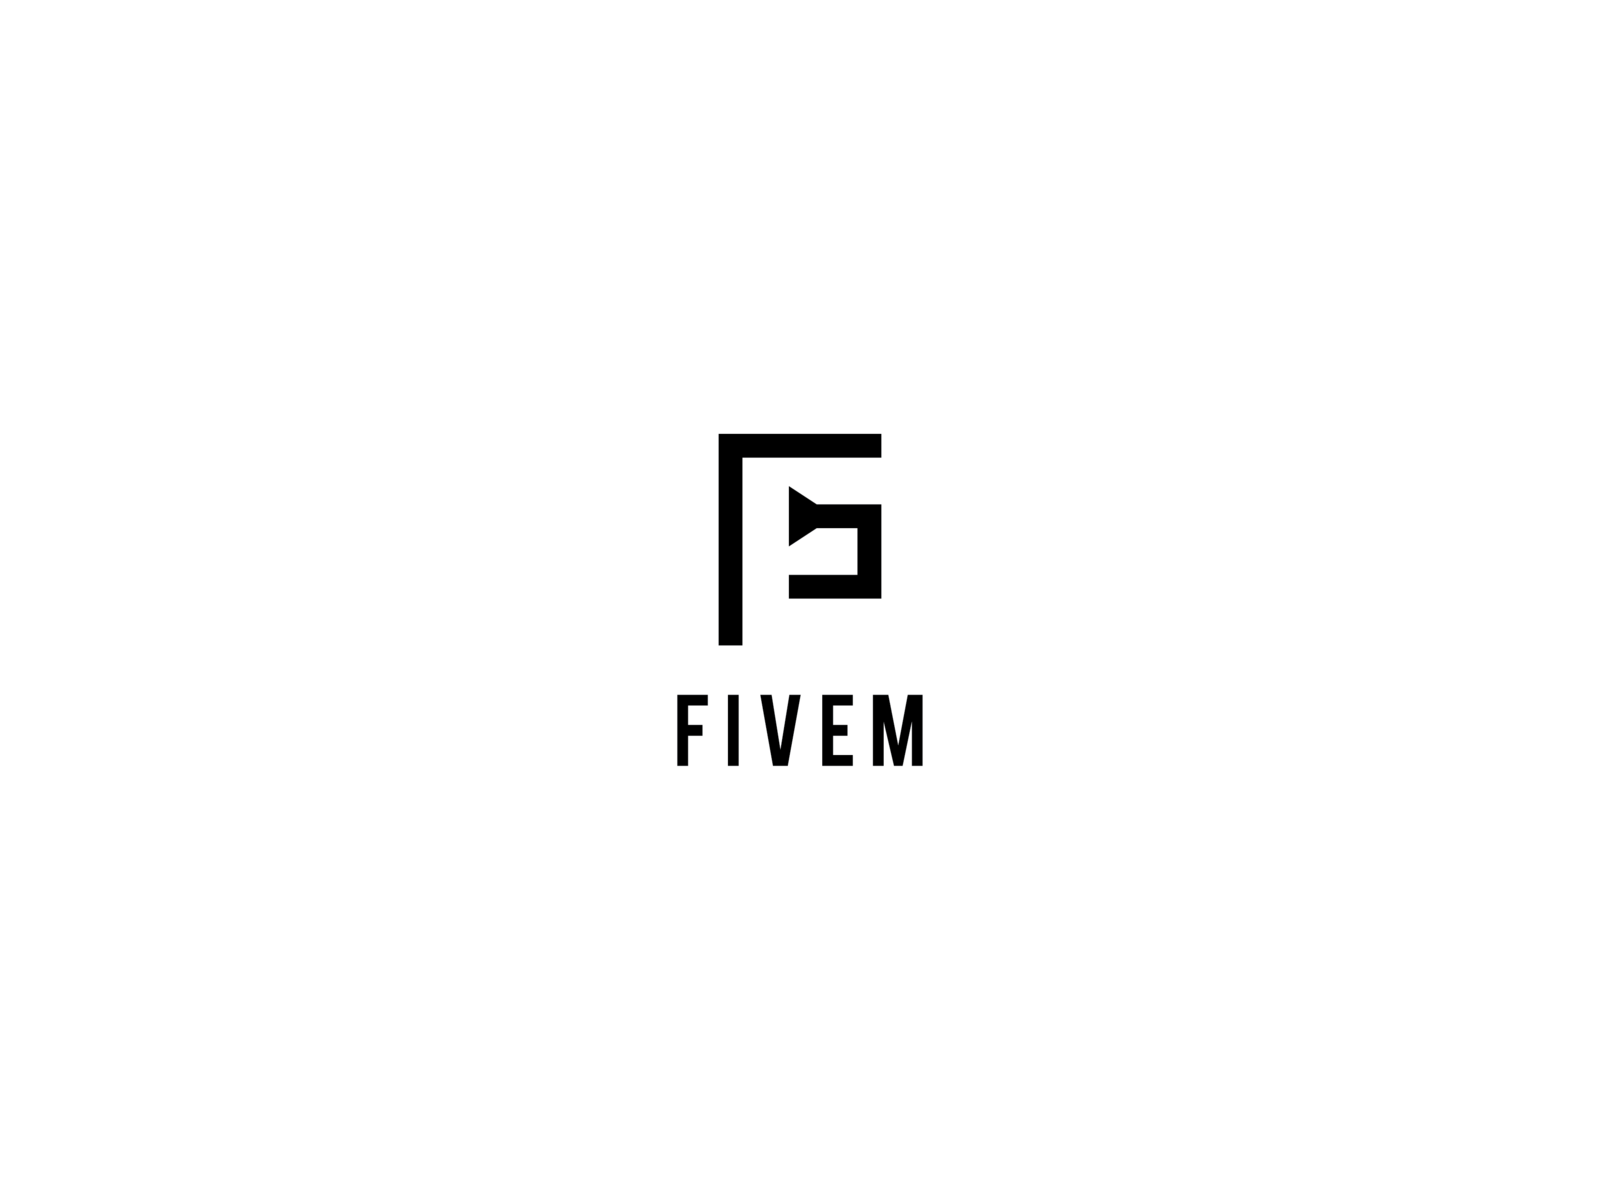 Five m. Фивем. FIVEM иконка. FIVEM PNG. FIVEM woulrp logo.